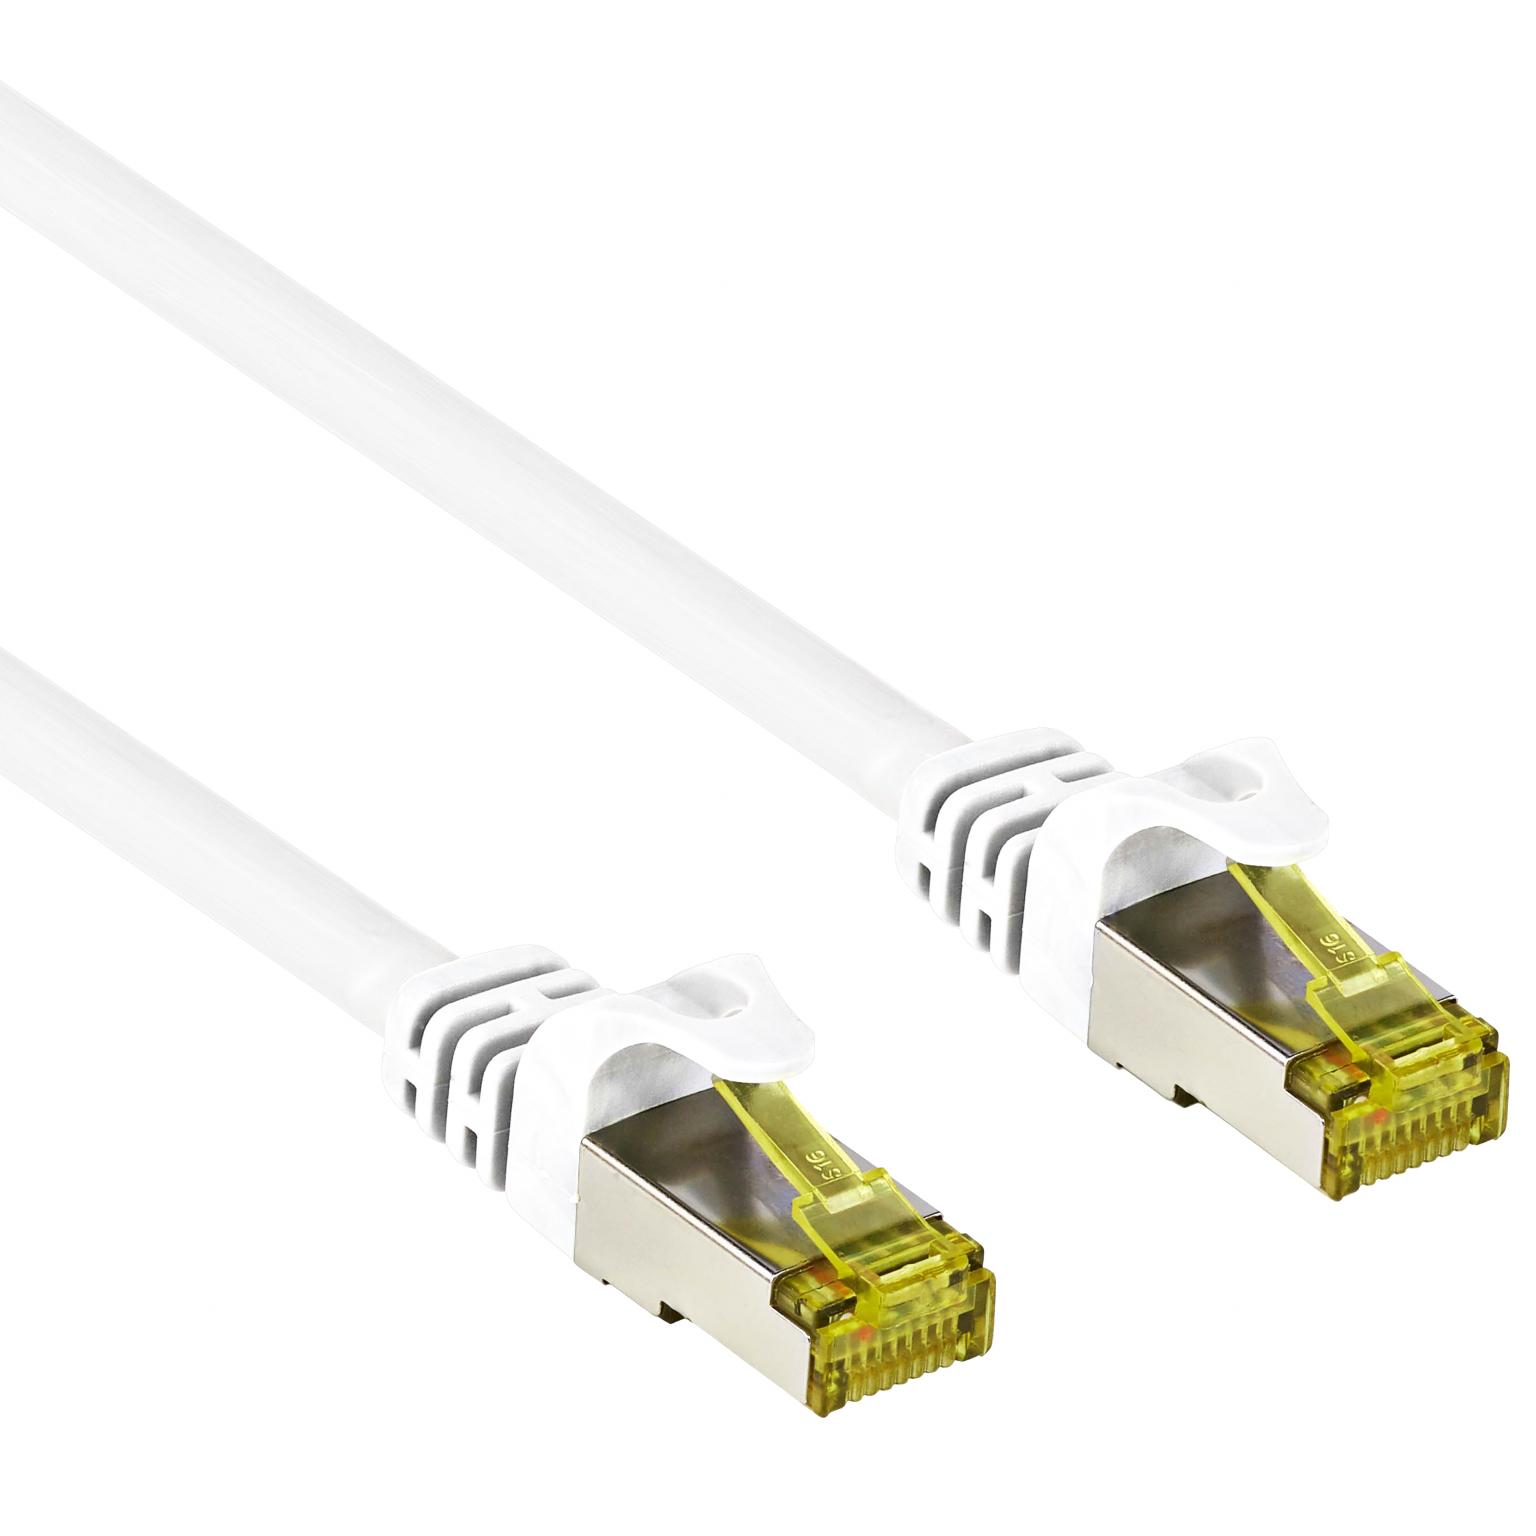 S/FTP kabel - Allteq